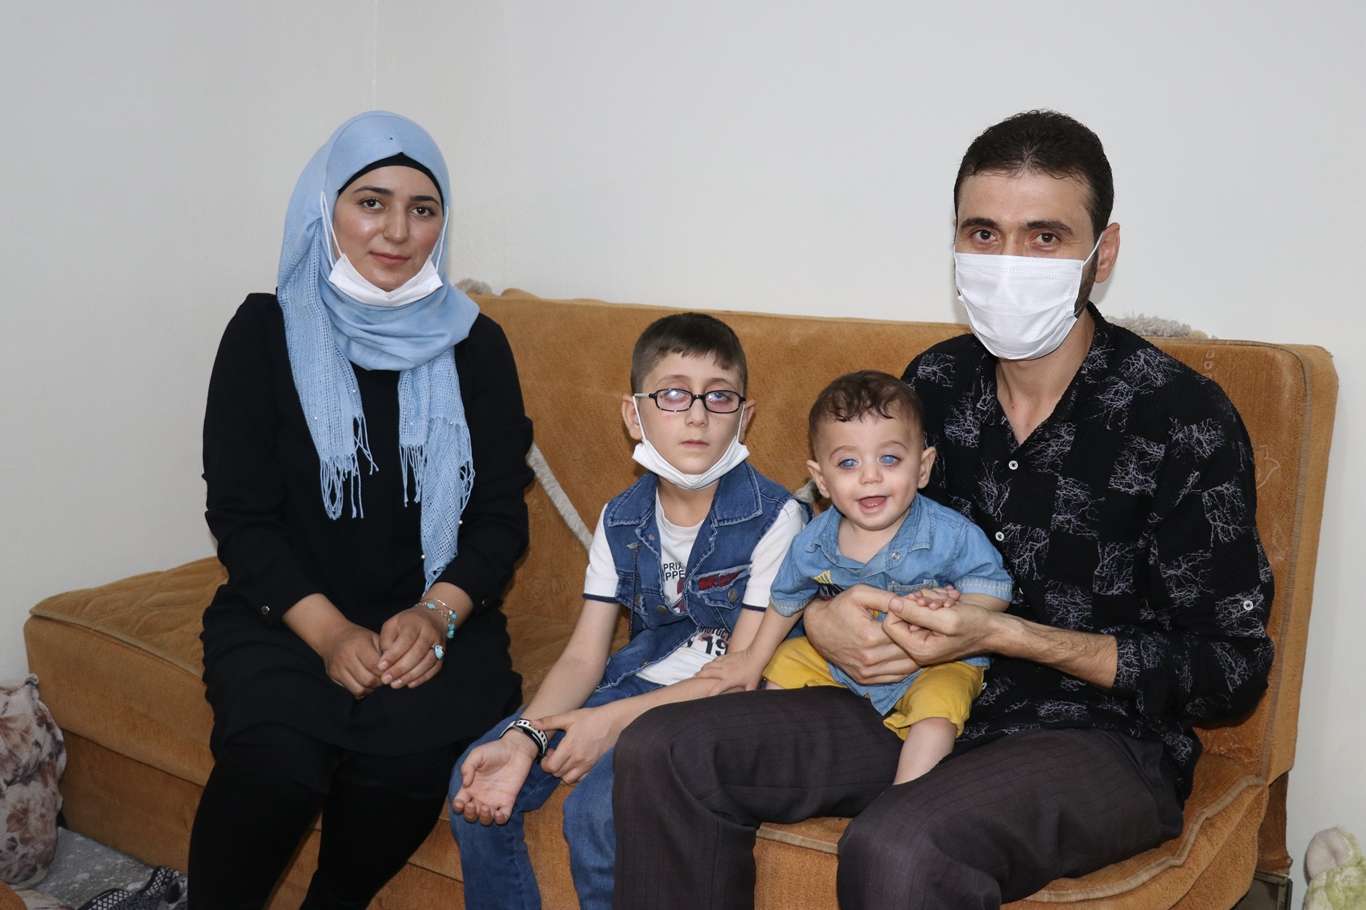 Suriyeli minik kardeşler gözlerine “ışık” olacak yardım eli bekliyor